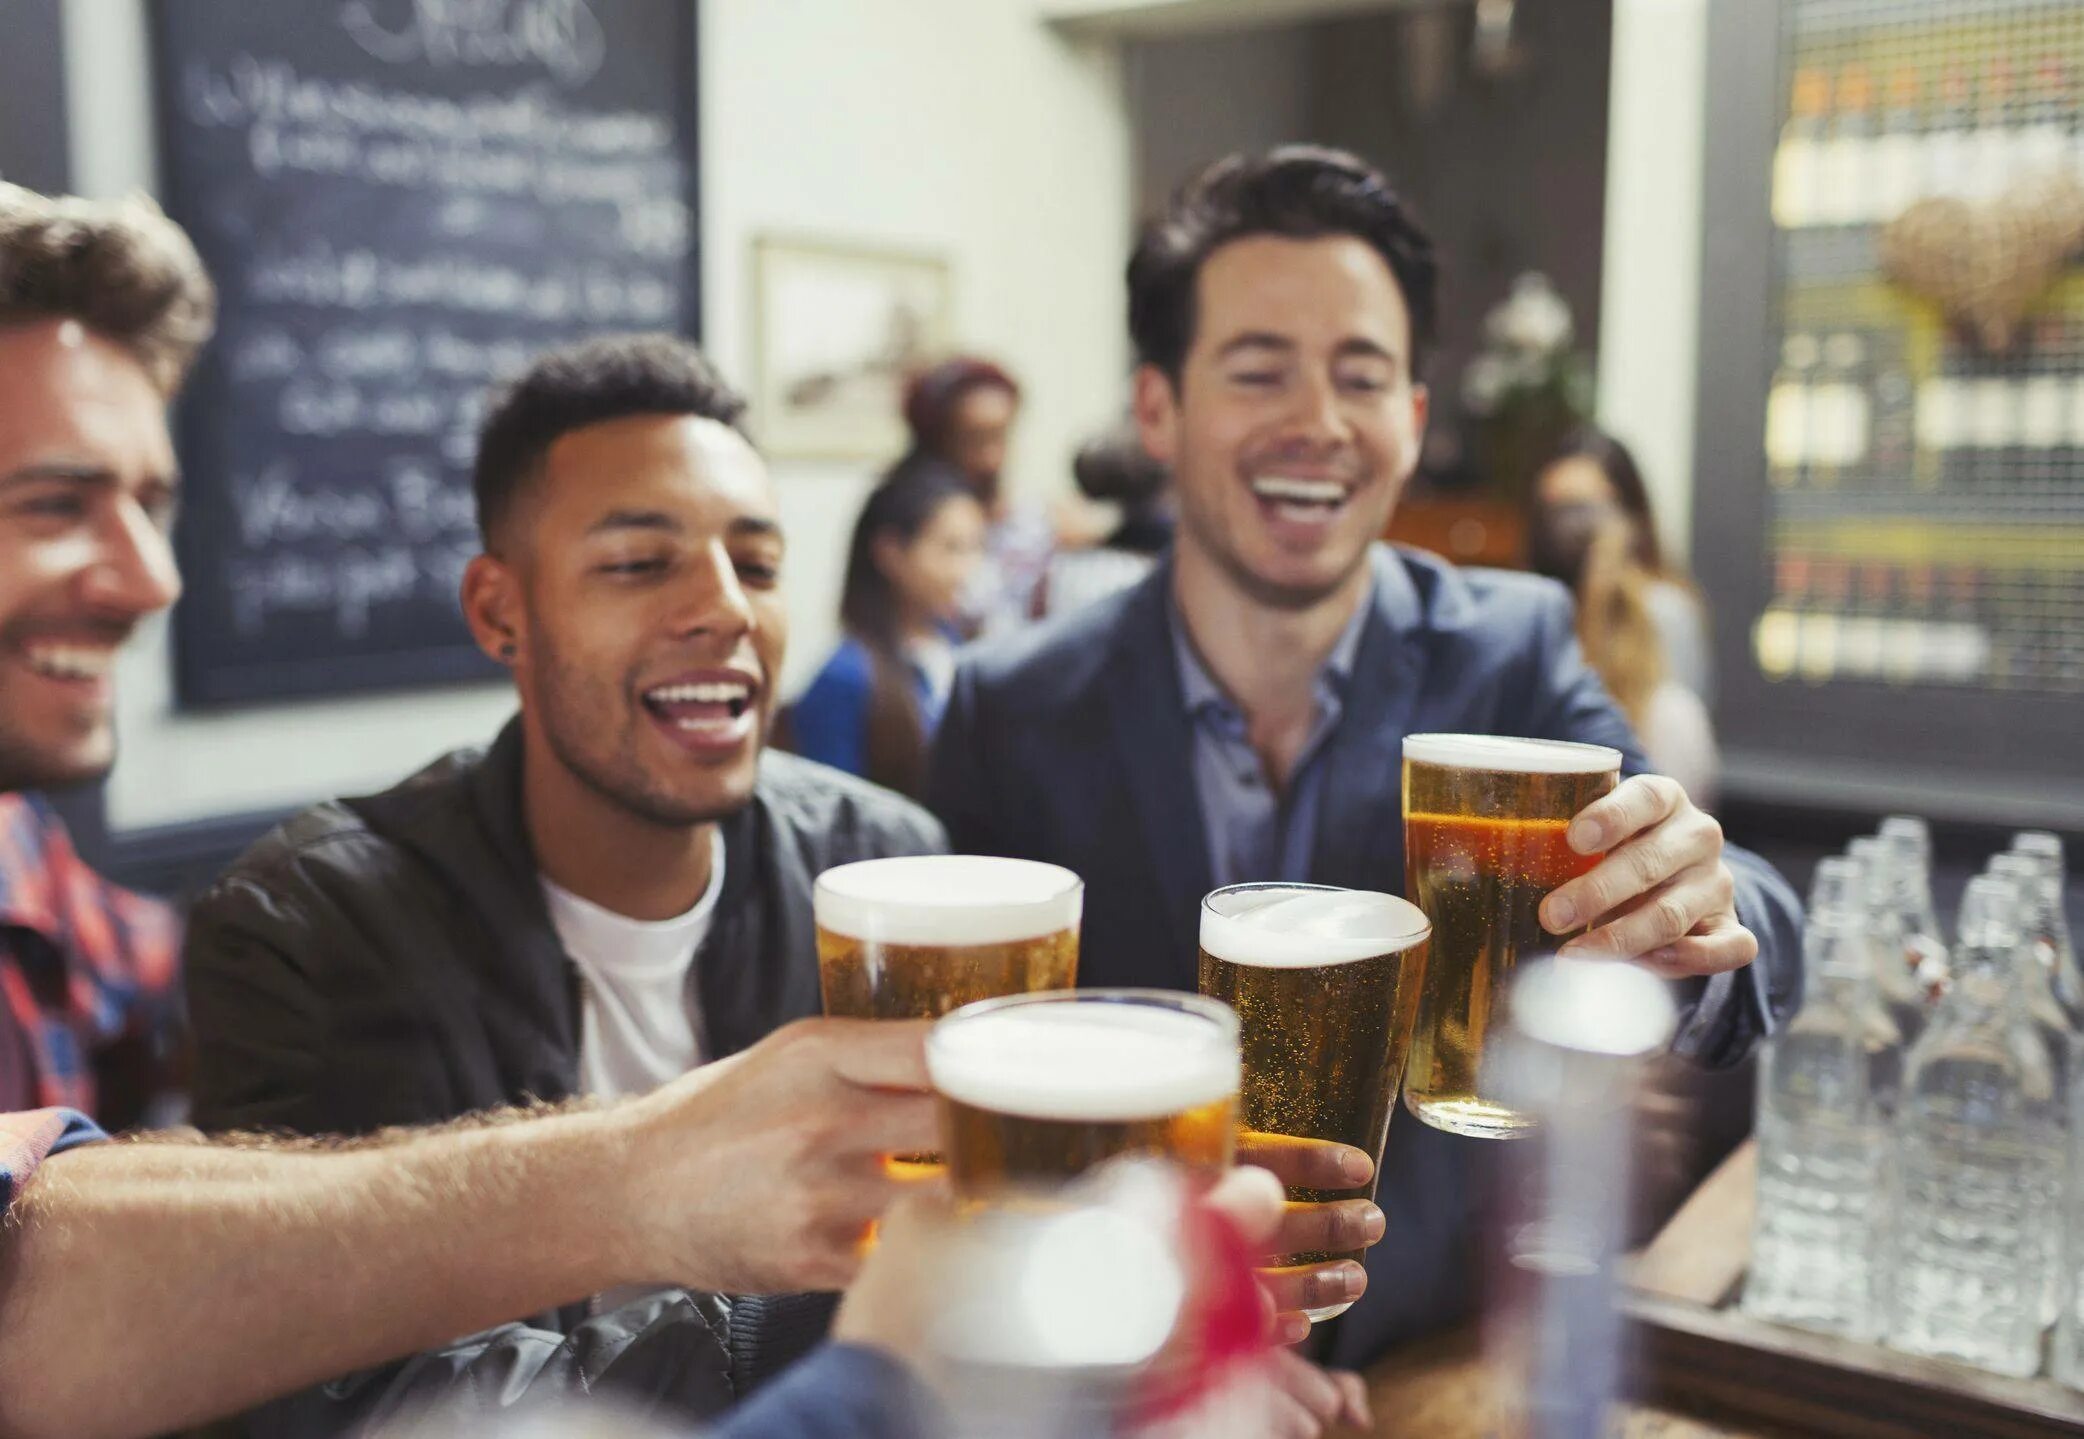 Что пьют в баре. Мужская компания в баре. Люди выпивают в баре. Пиво для друзей. Пьют пиво в баре.